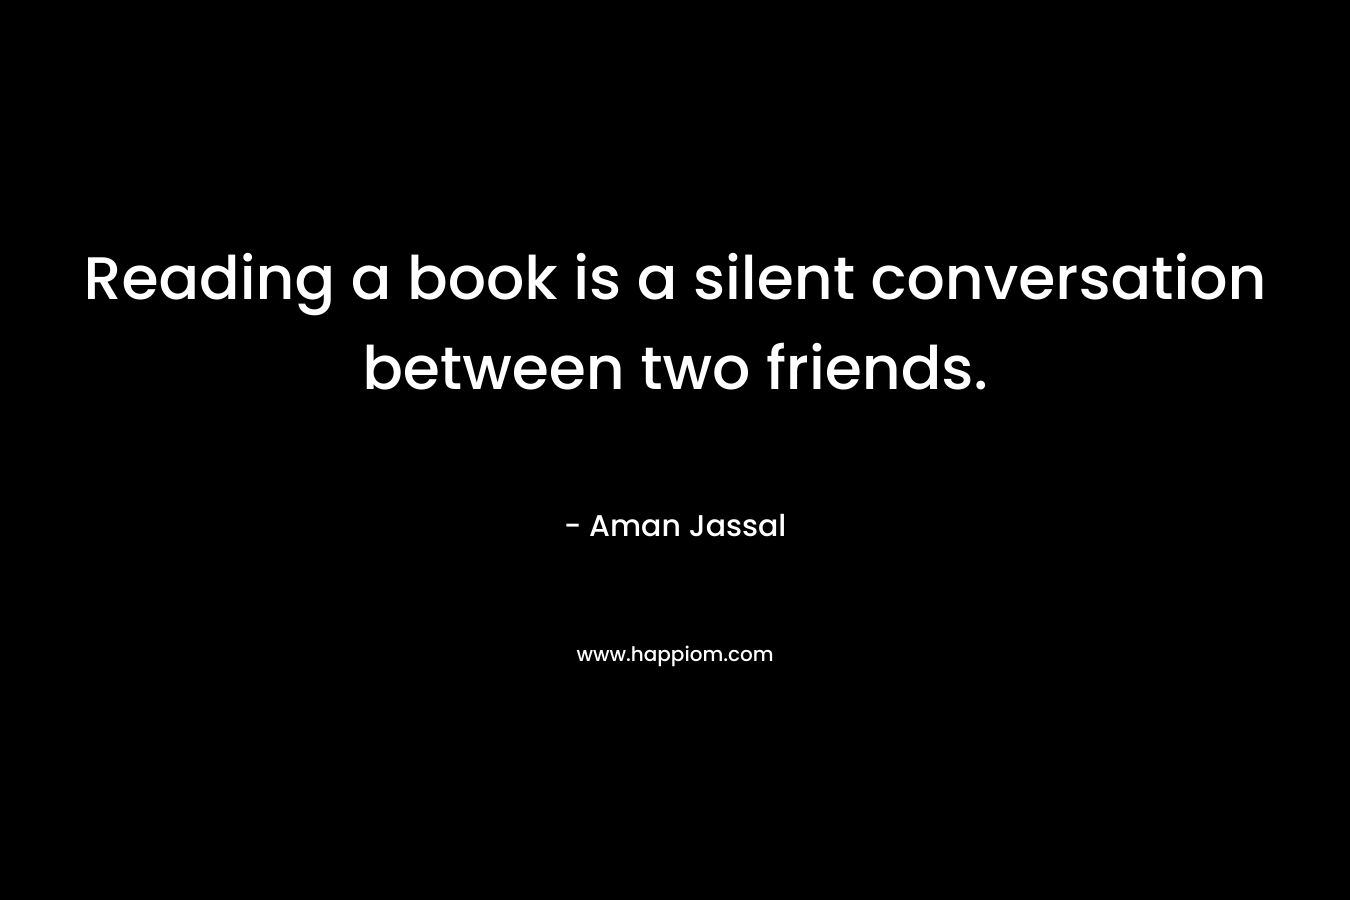 Reading a book is a silent conversation between two friends. – Aman Jassal